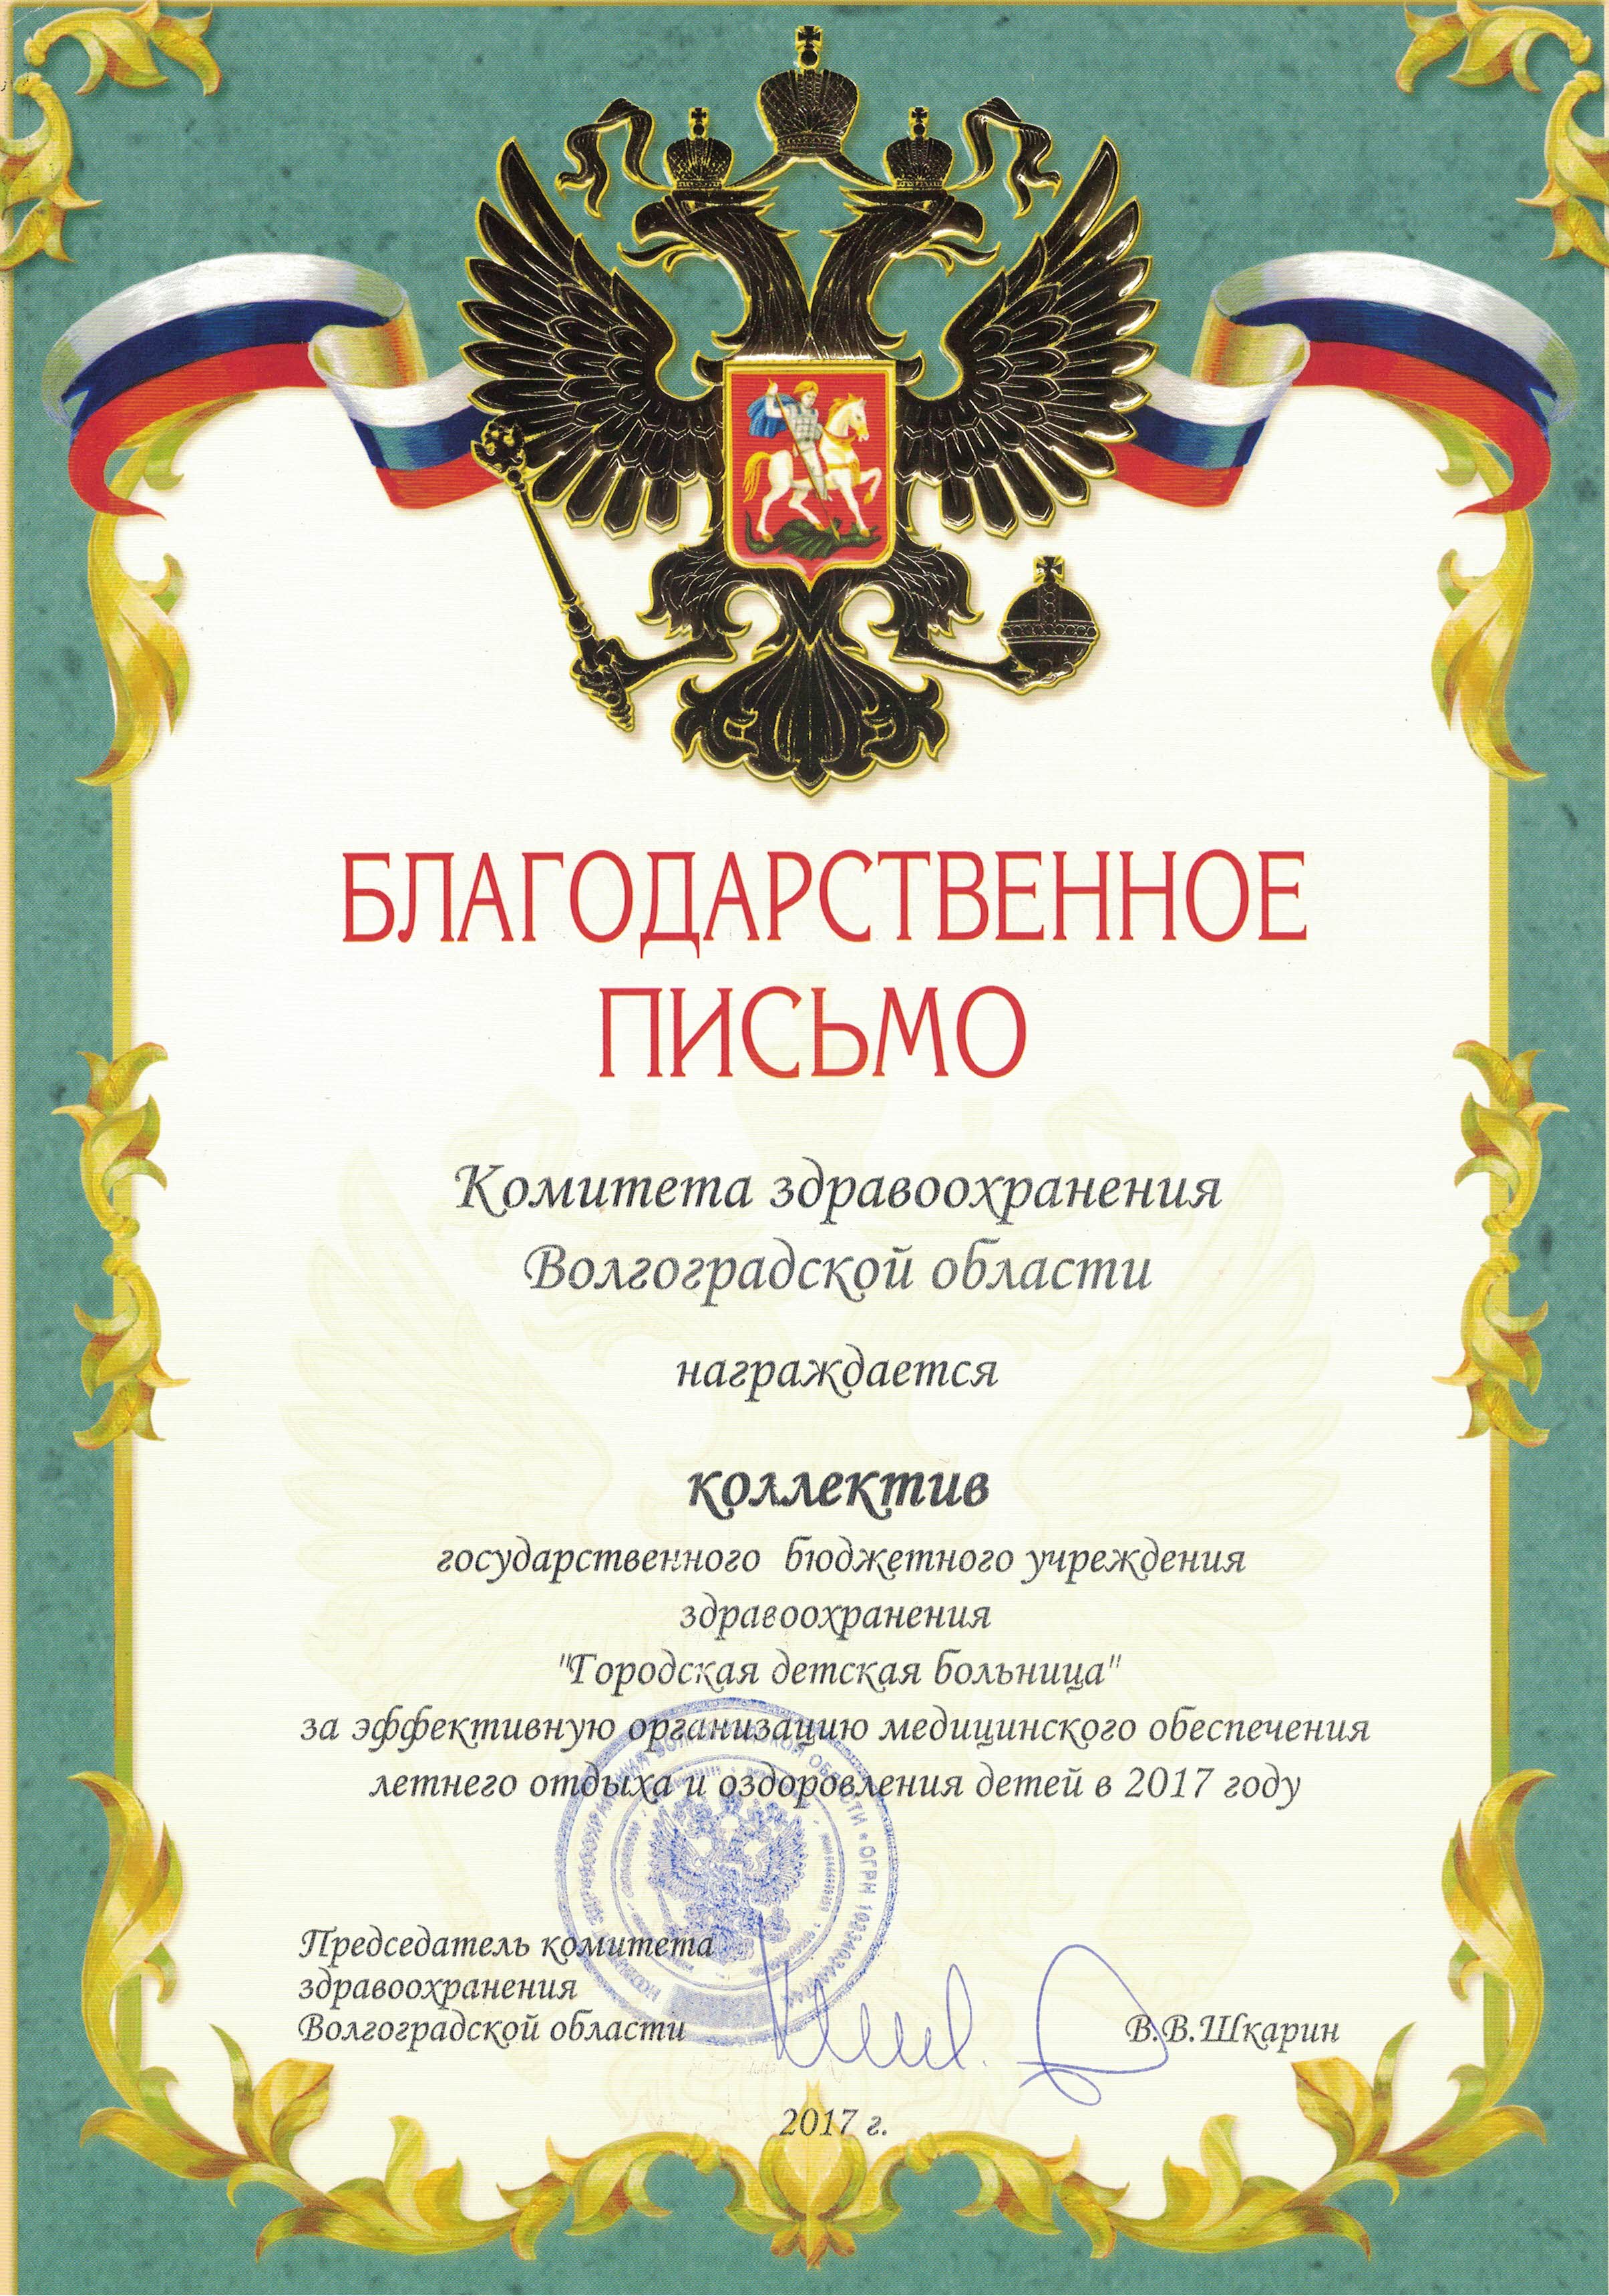 Благодарственное письмо комитета здравоохранения Волгоградской области